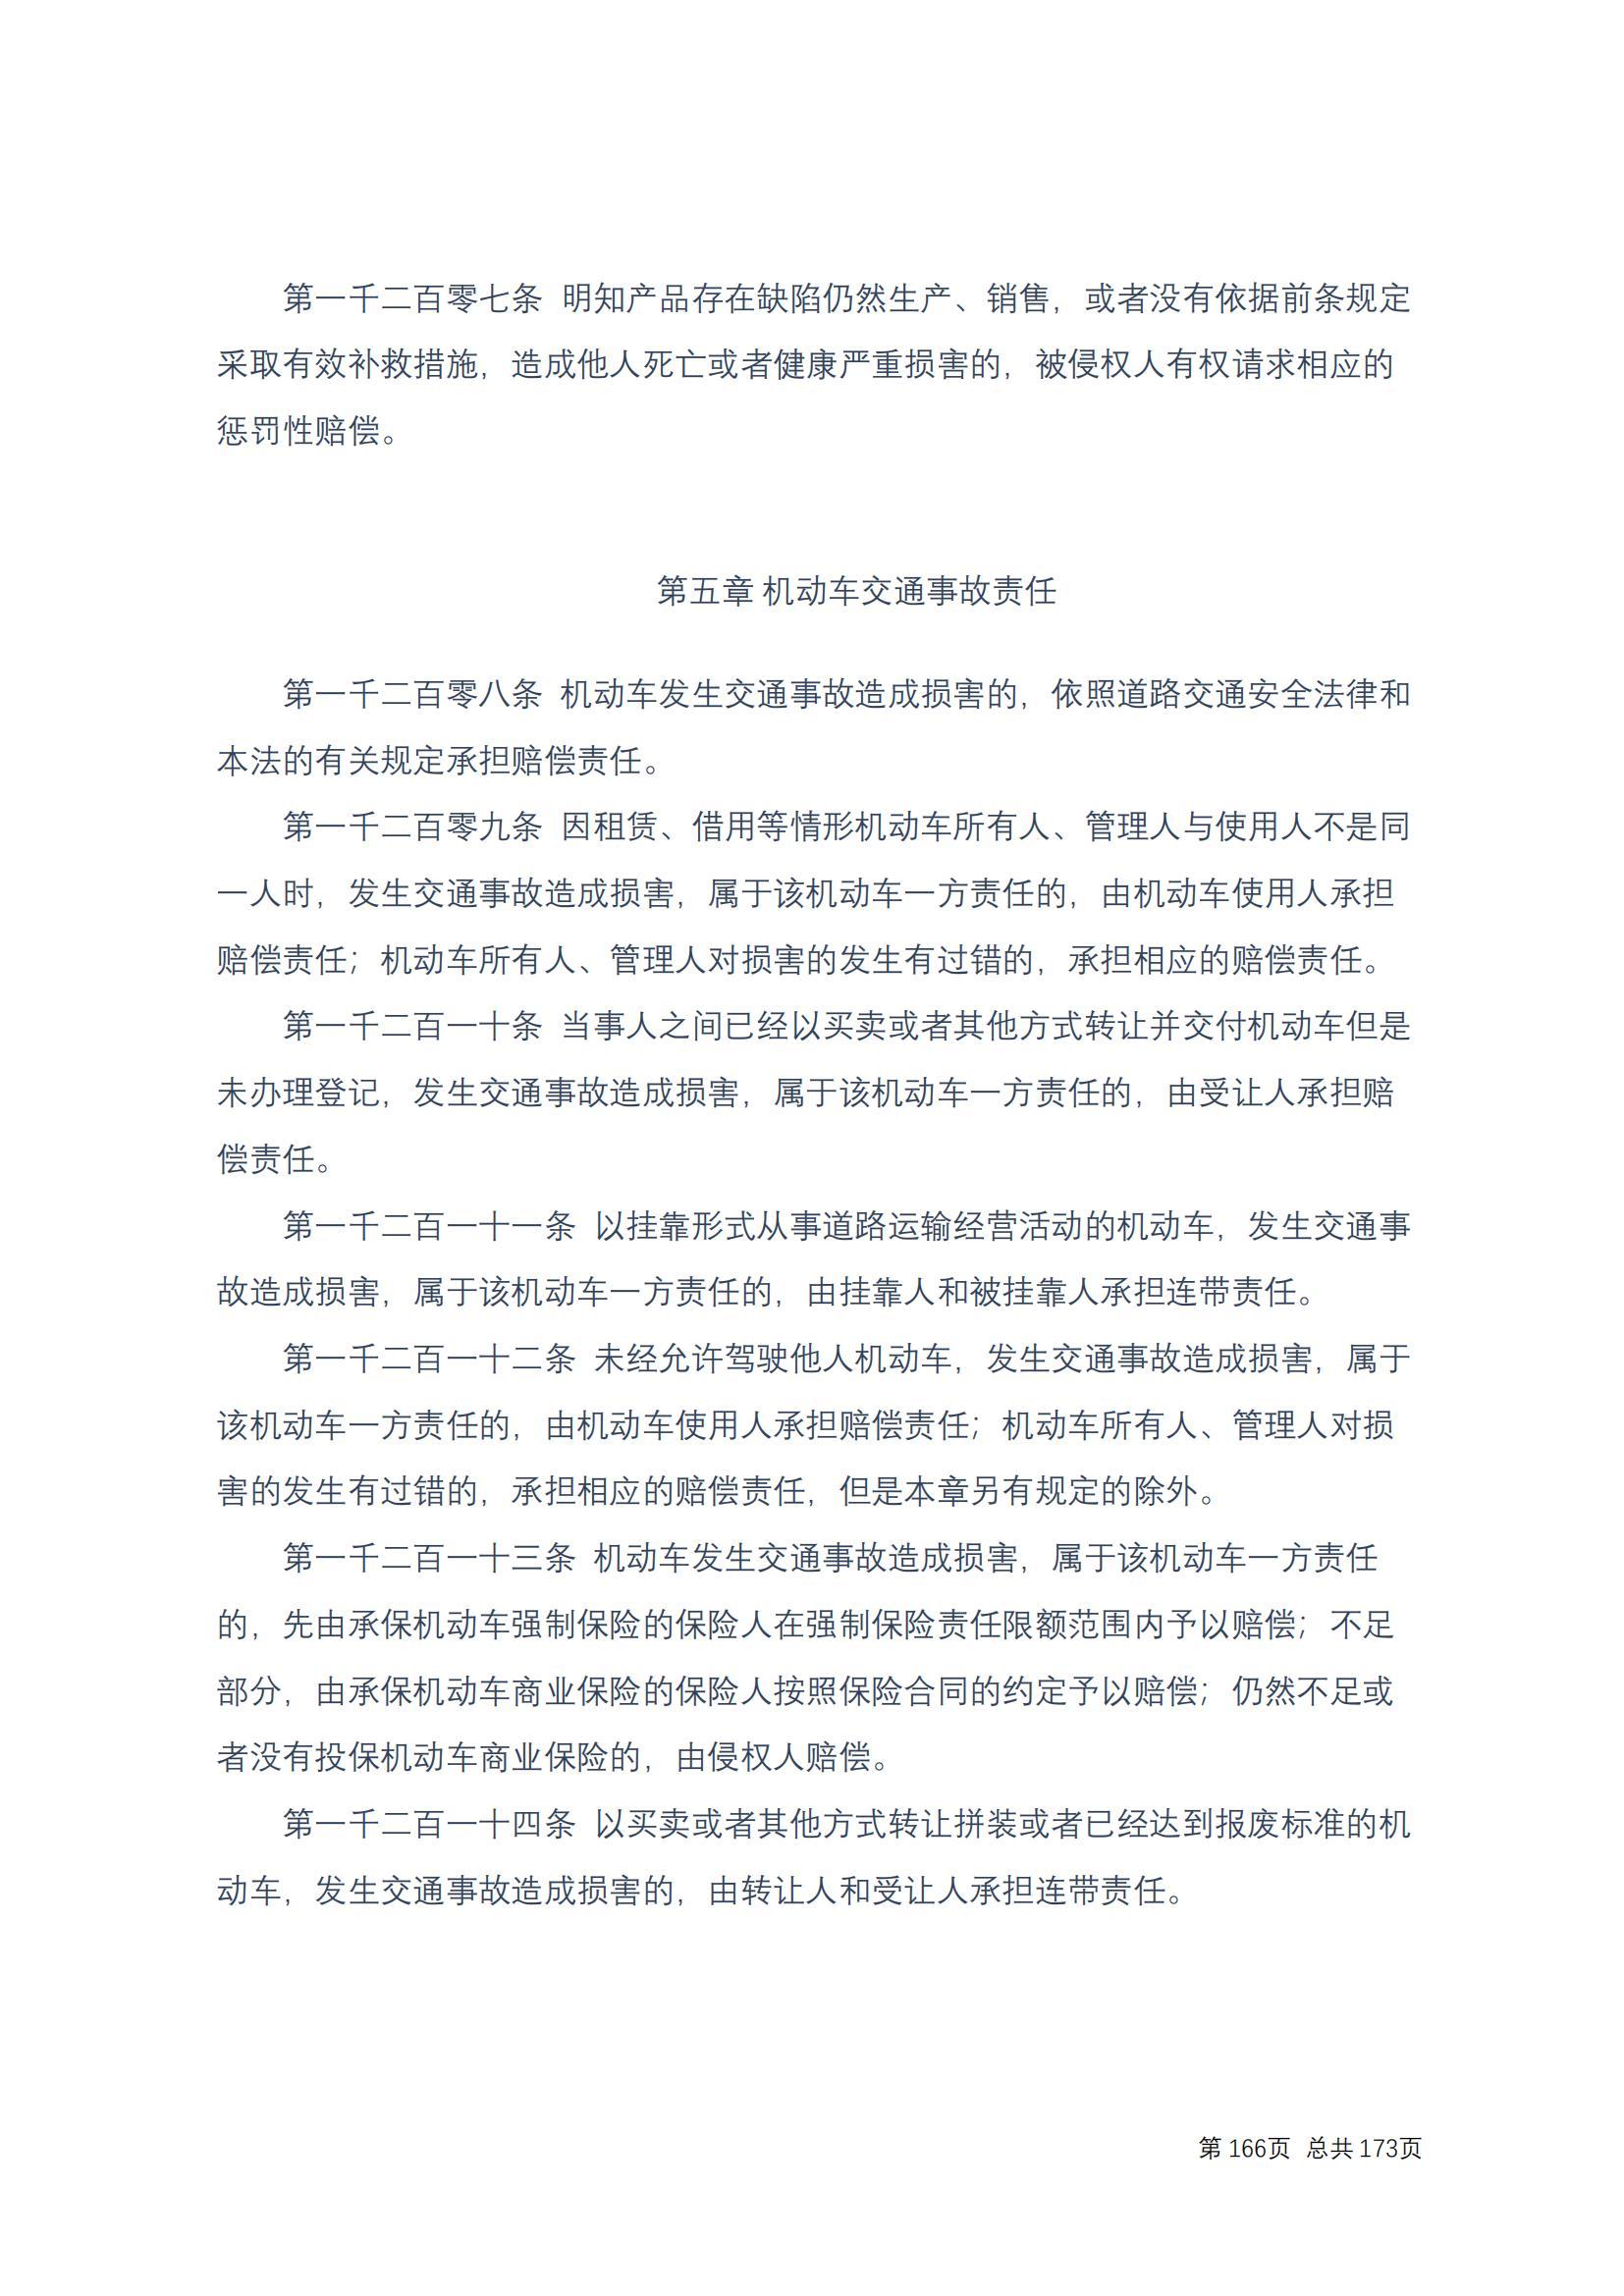 中华人民共和国民法典 修改过_165